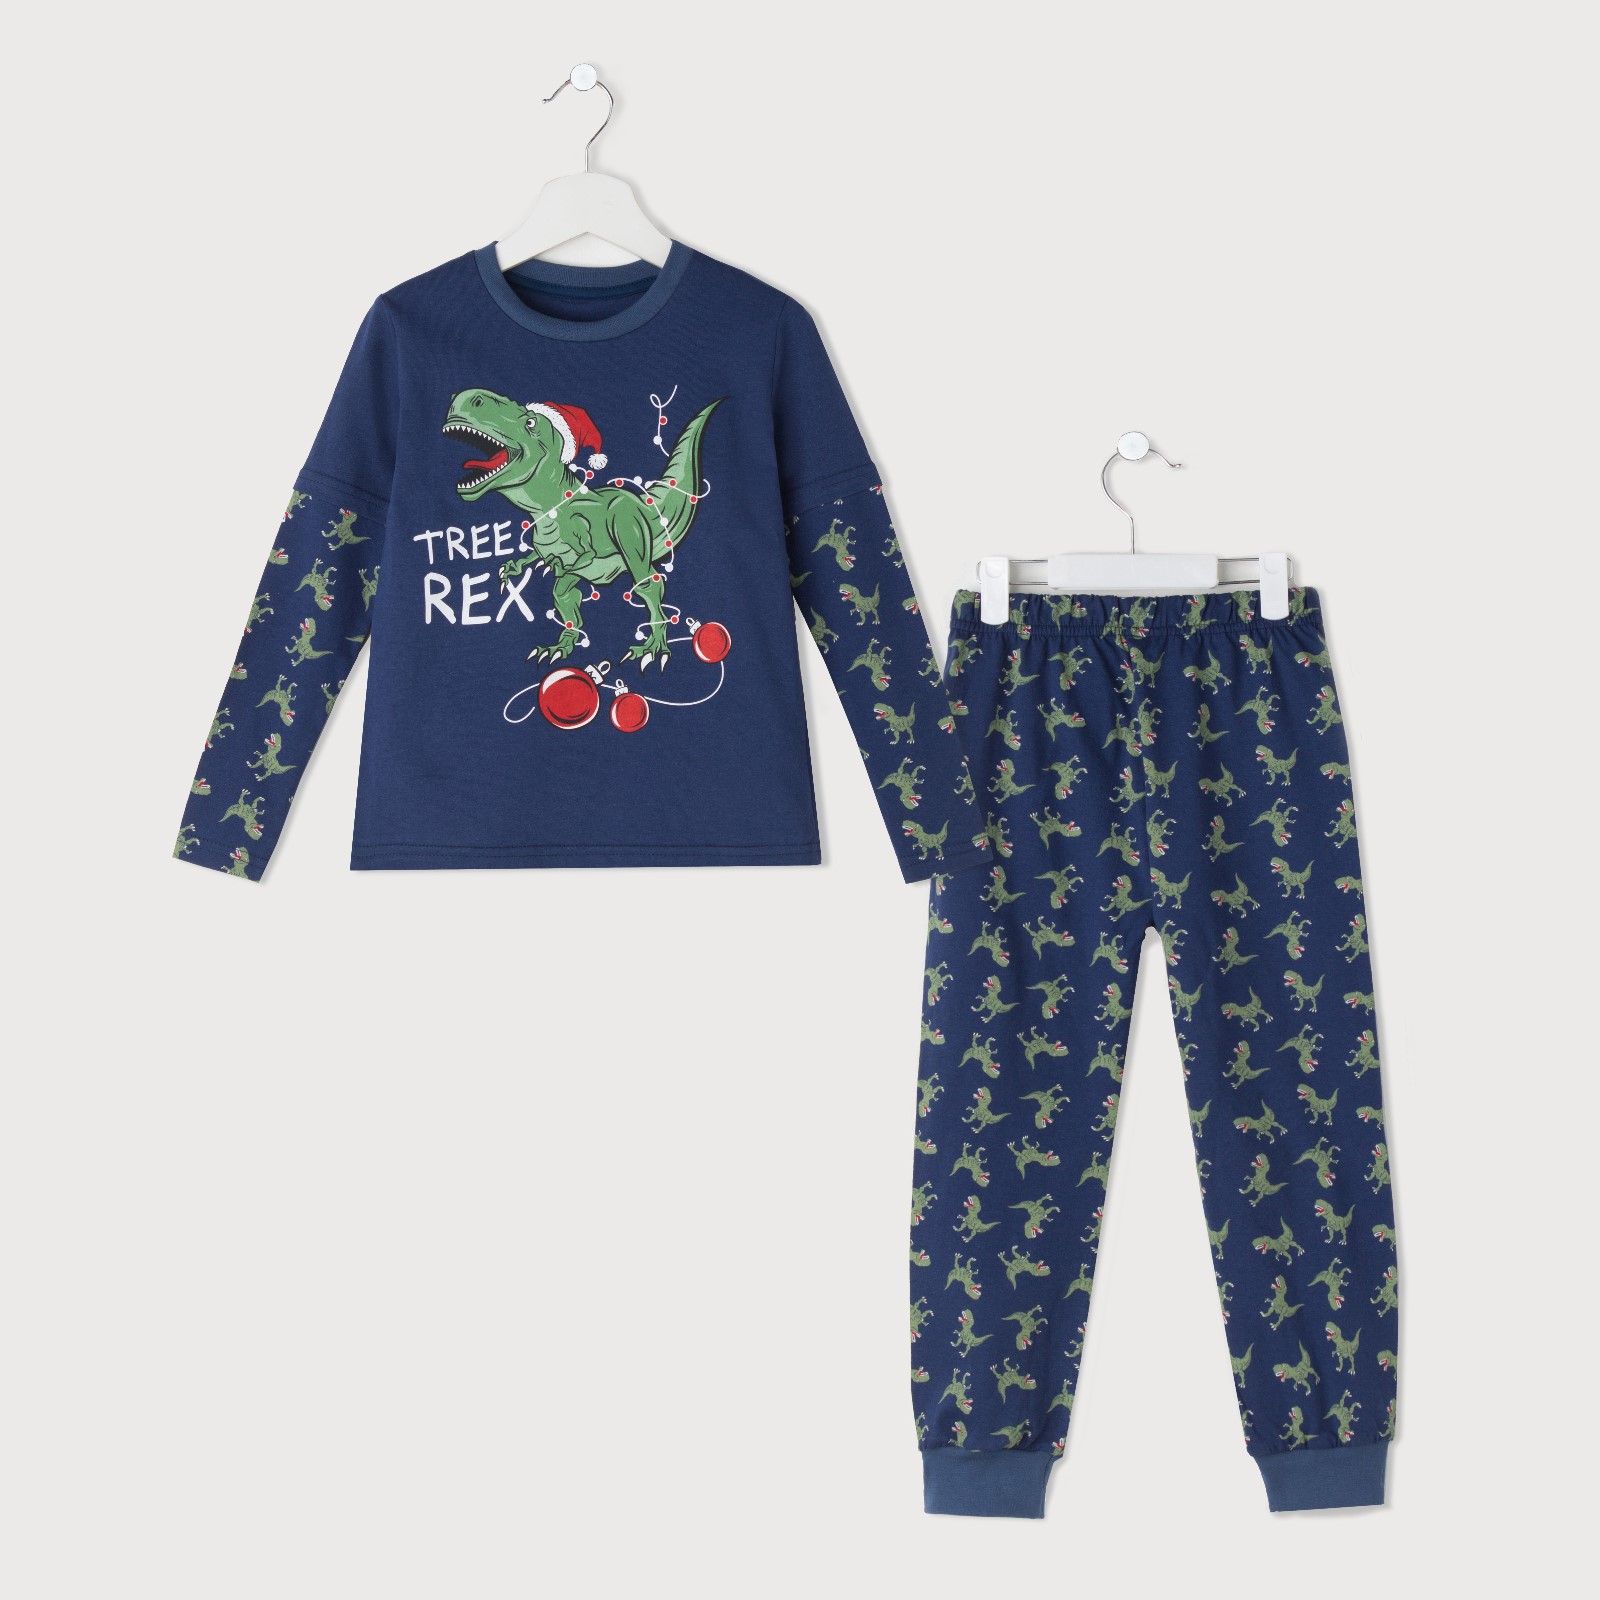 Детская пижама Rex Цвет: Синий (3-4 года), размер 3-4 года kaf593174 Детская пижама Rex Цвет: Синий (3-4 года) - фото 1